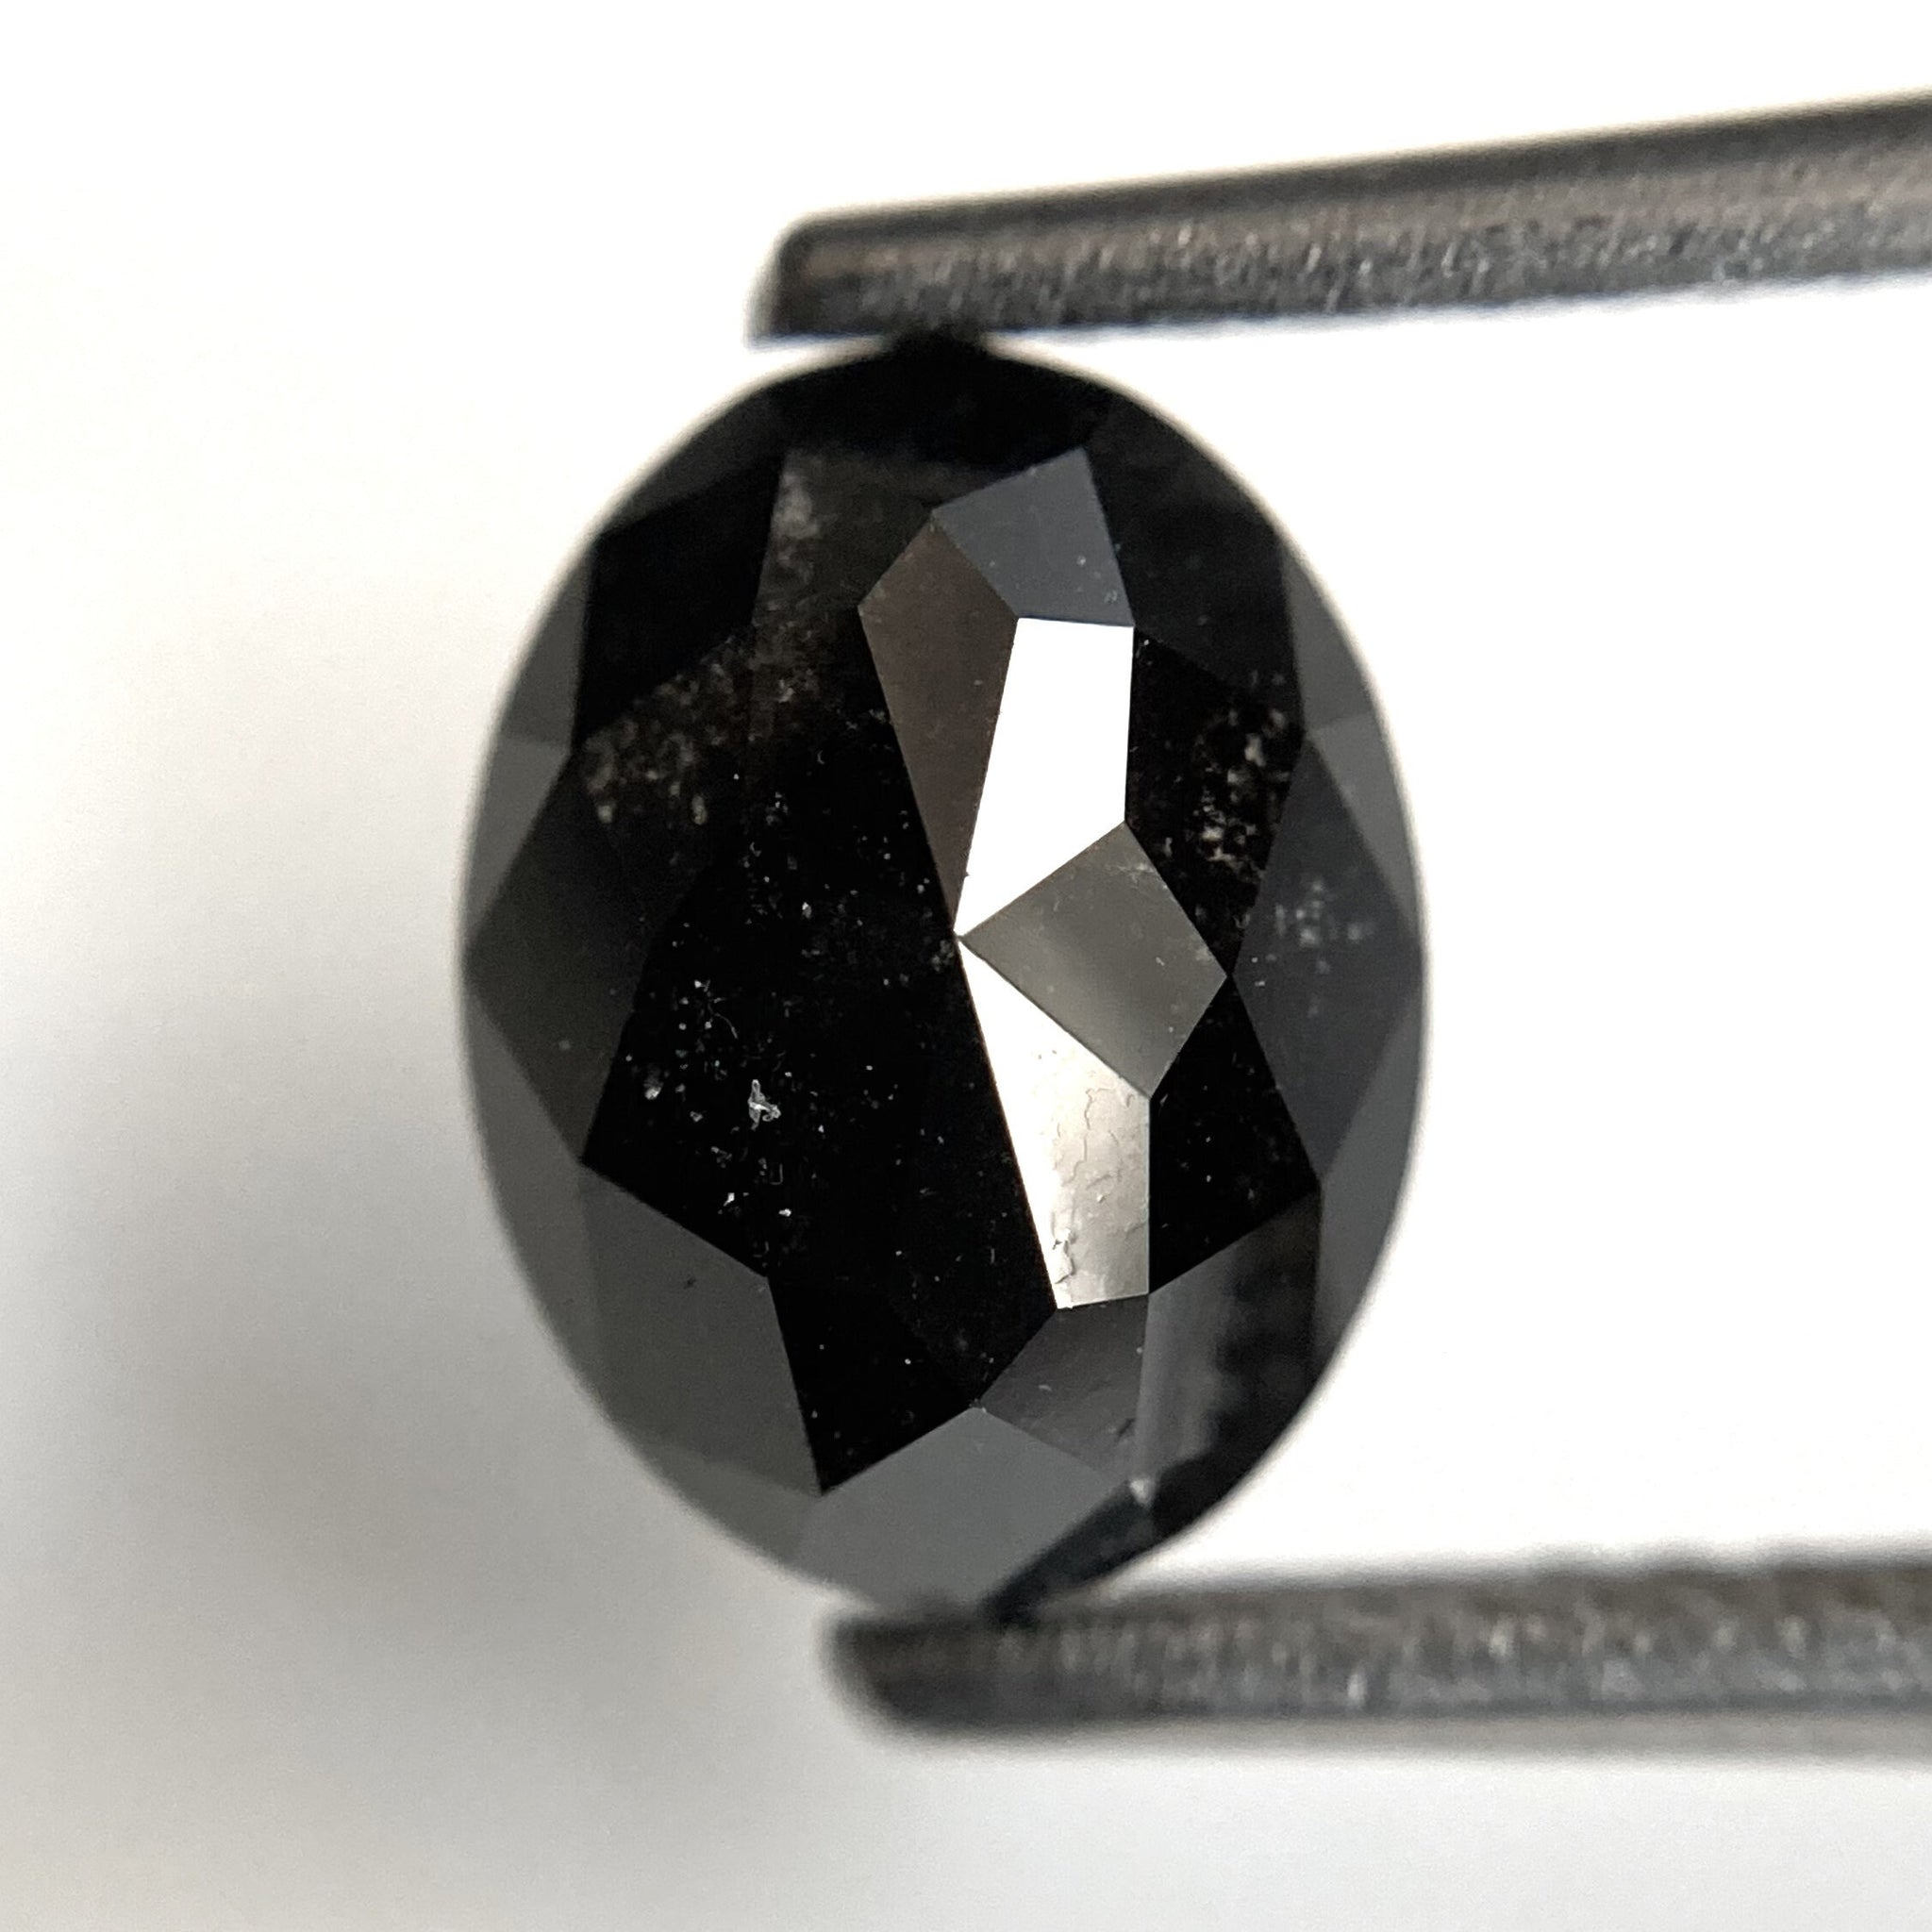 2.14 Ct Natural loose diamond Oval Shape Salt and Pepper, 8.50 mm x 6.53 mm x 4.25 mm Full Rose-Cut Oval shape natural loose diamond SJ87-67